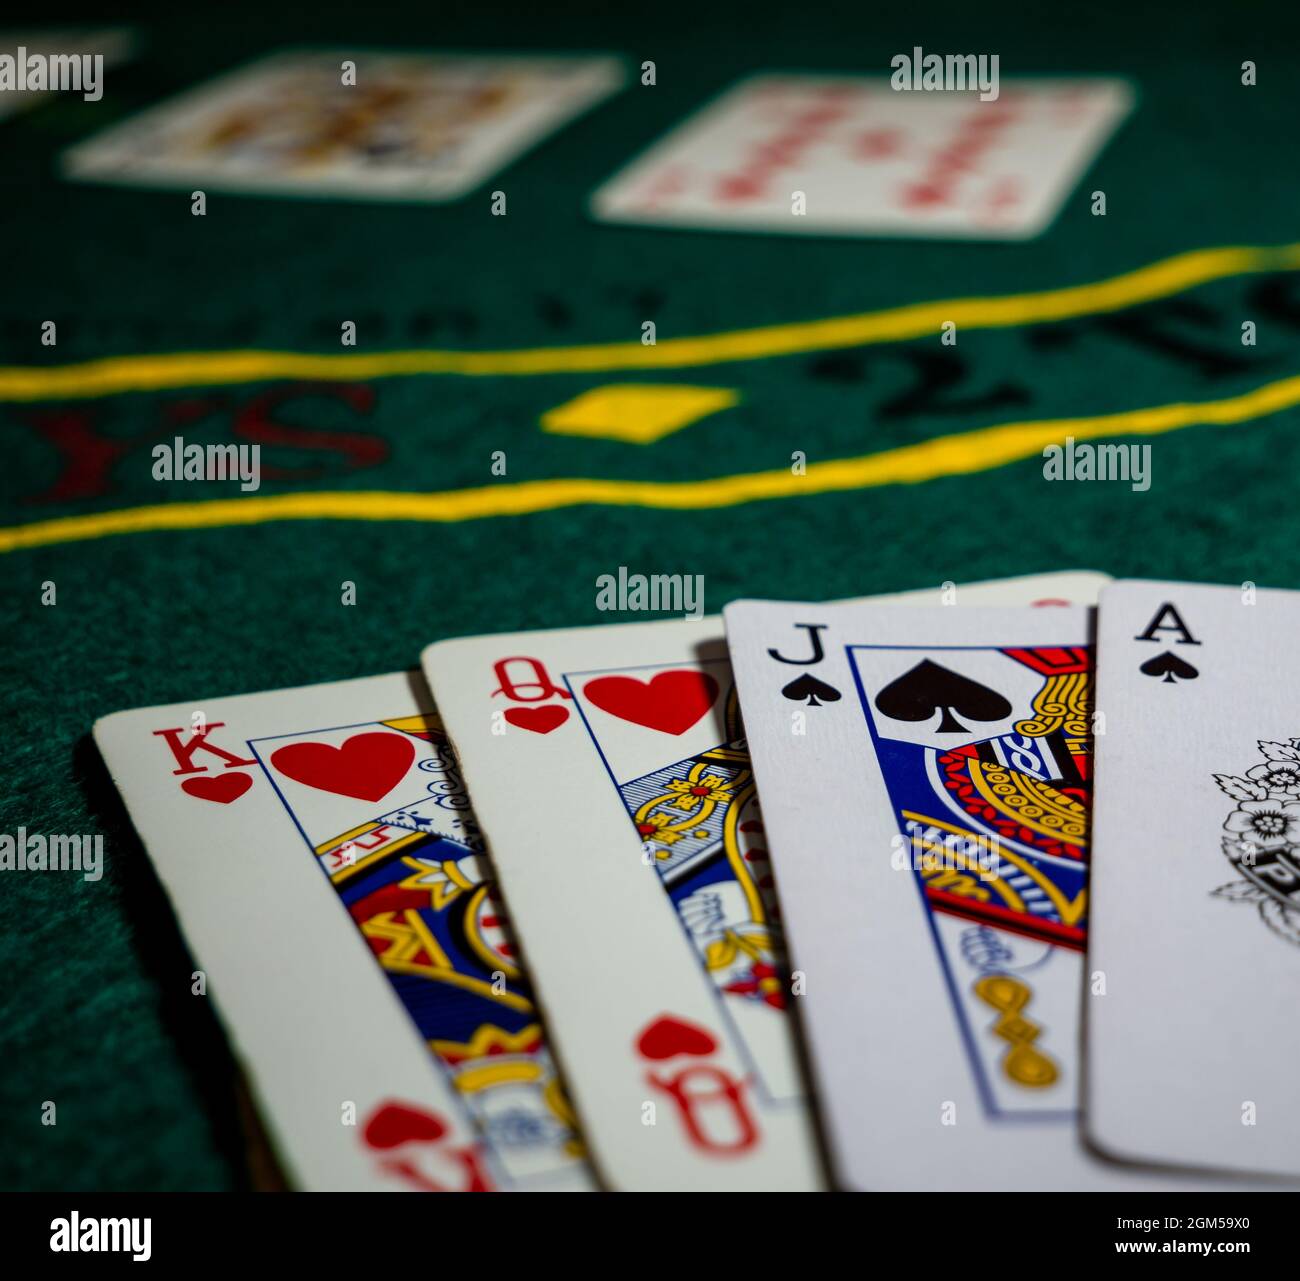 Karten mit Royal Flushs Scoring Hand beim Spielen Stockfoto